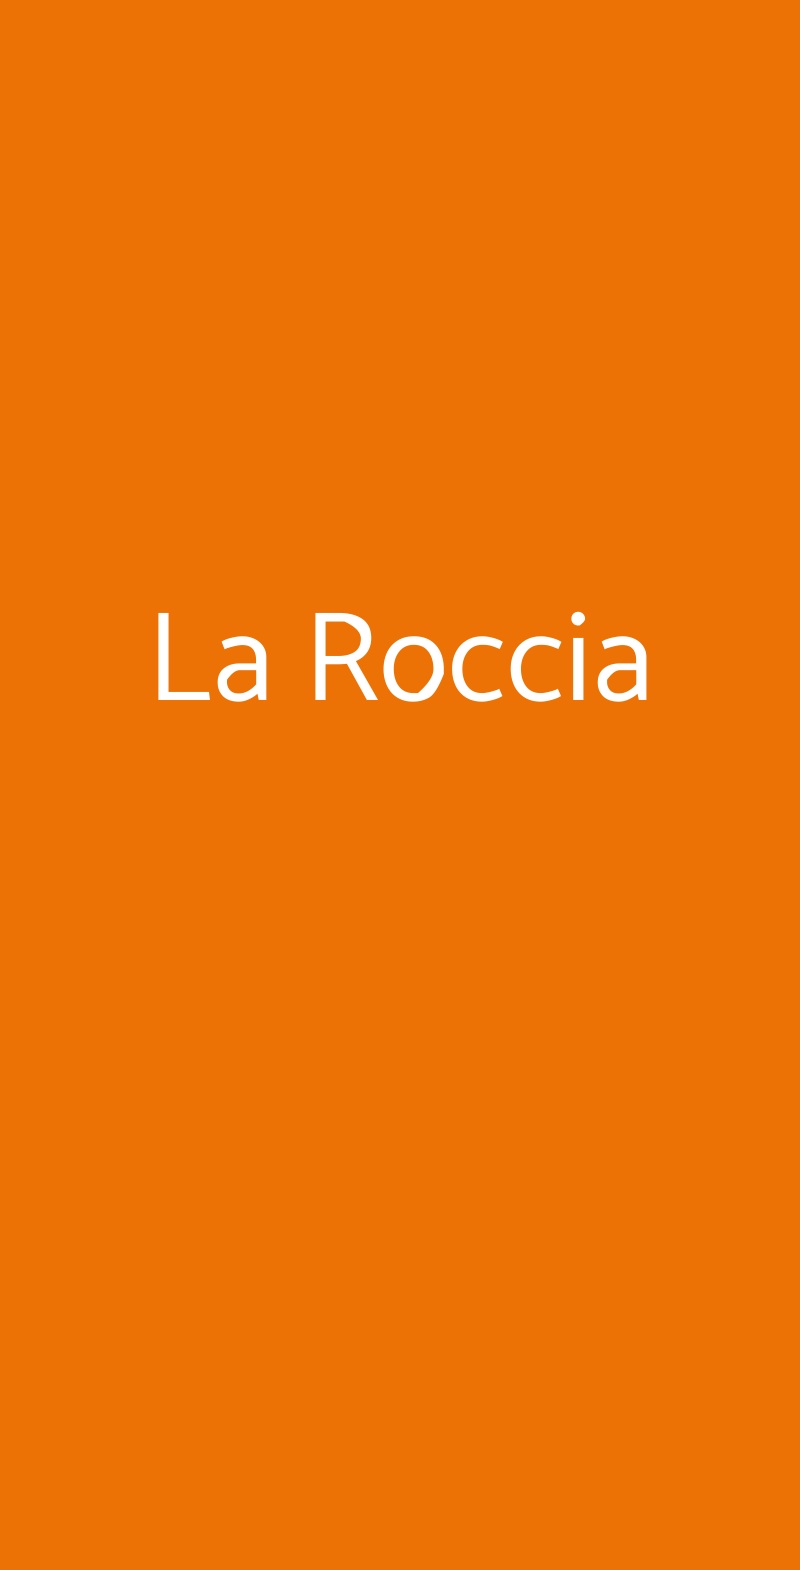 La Roccia Milano menù 1 pagina